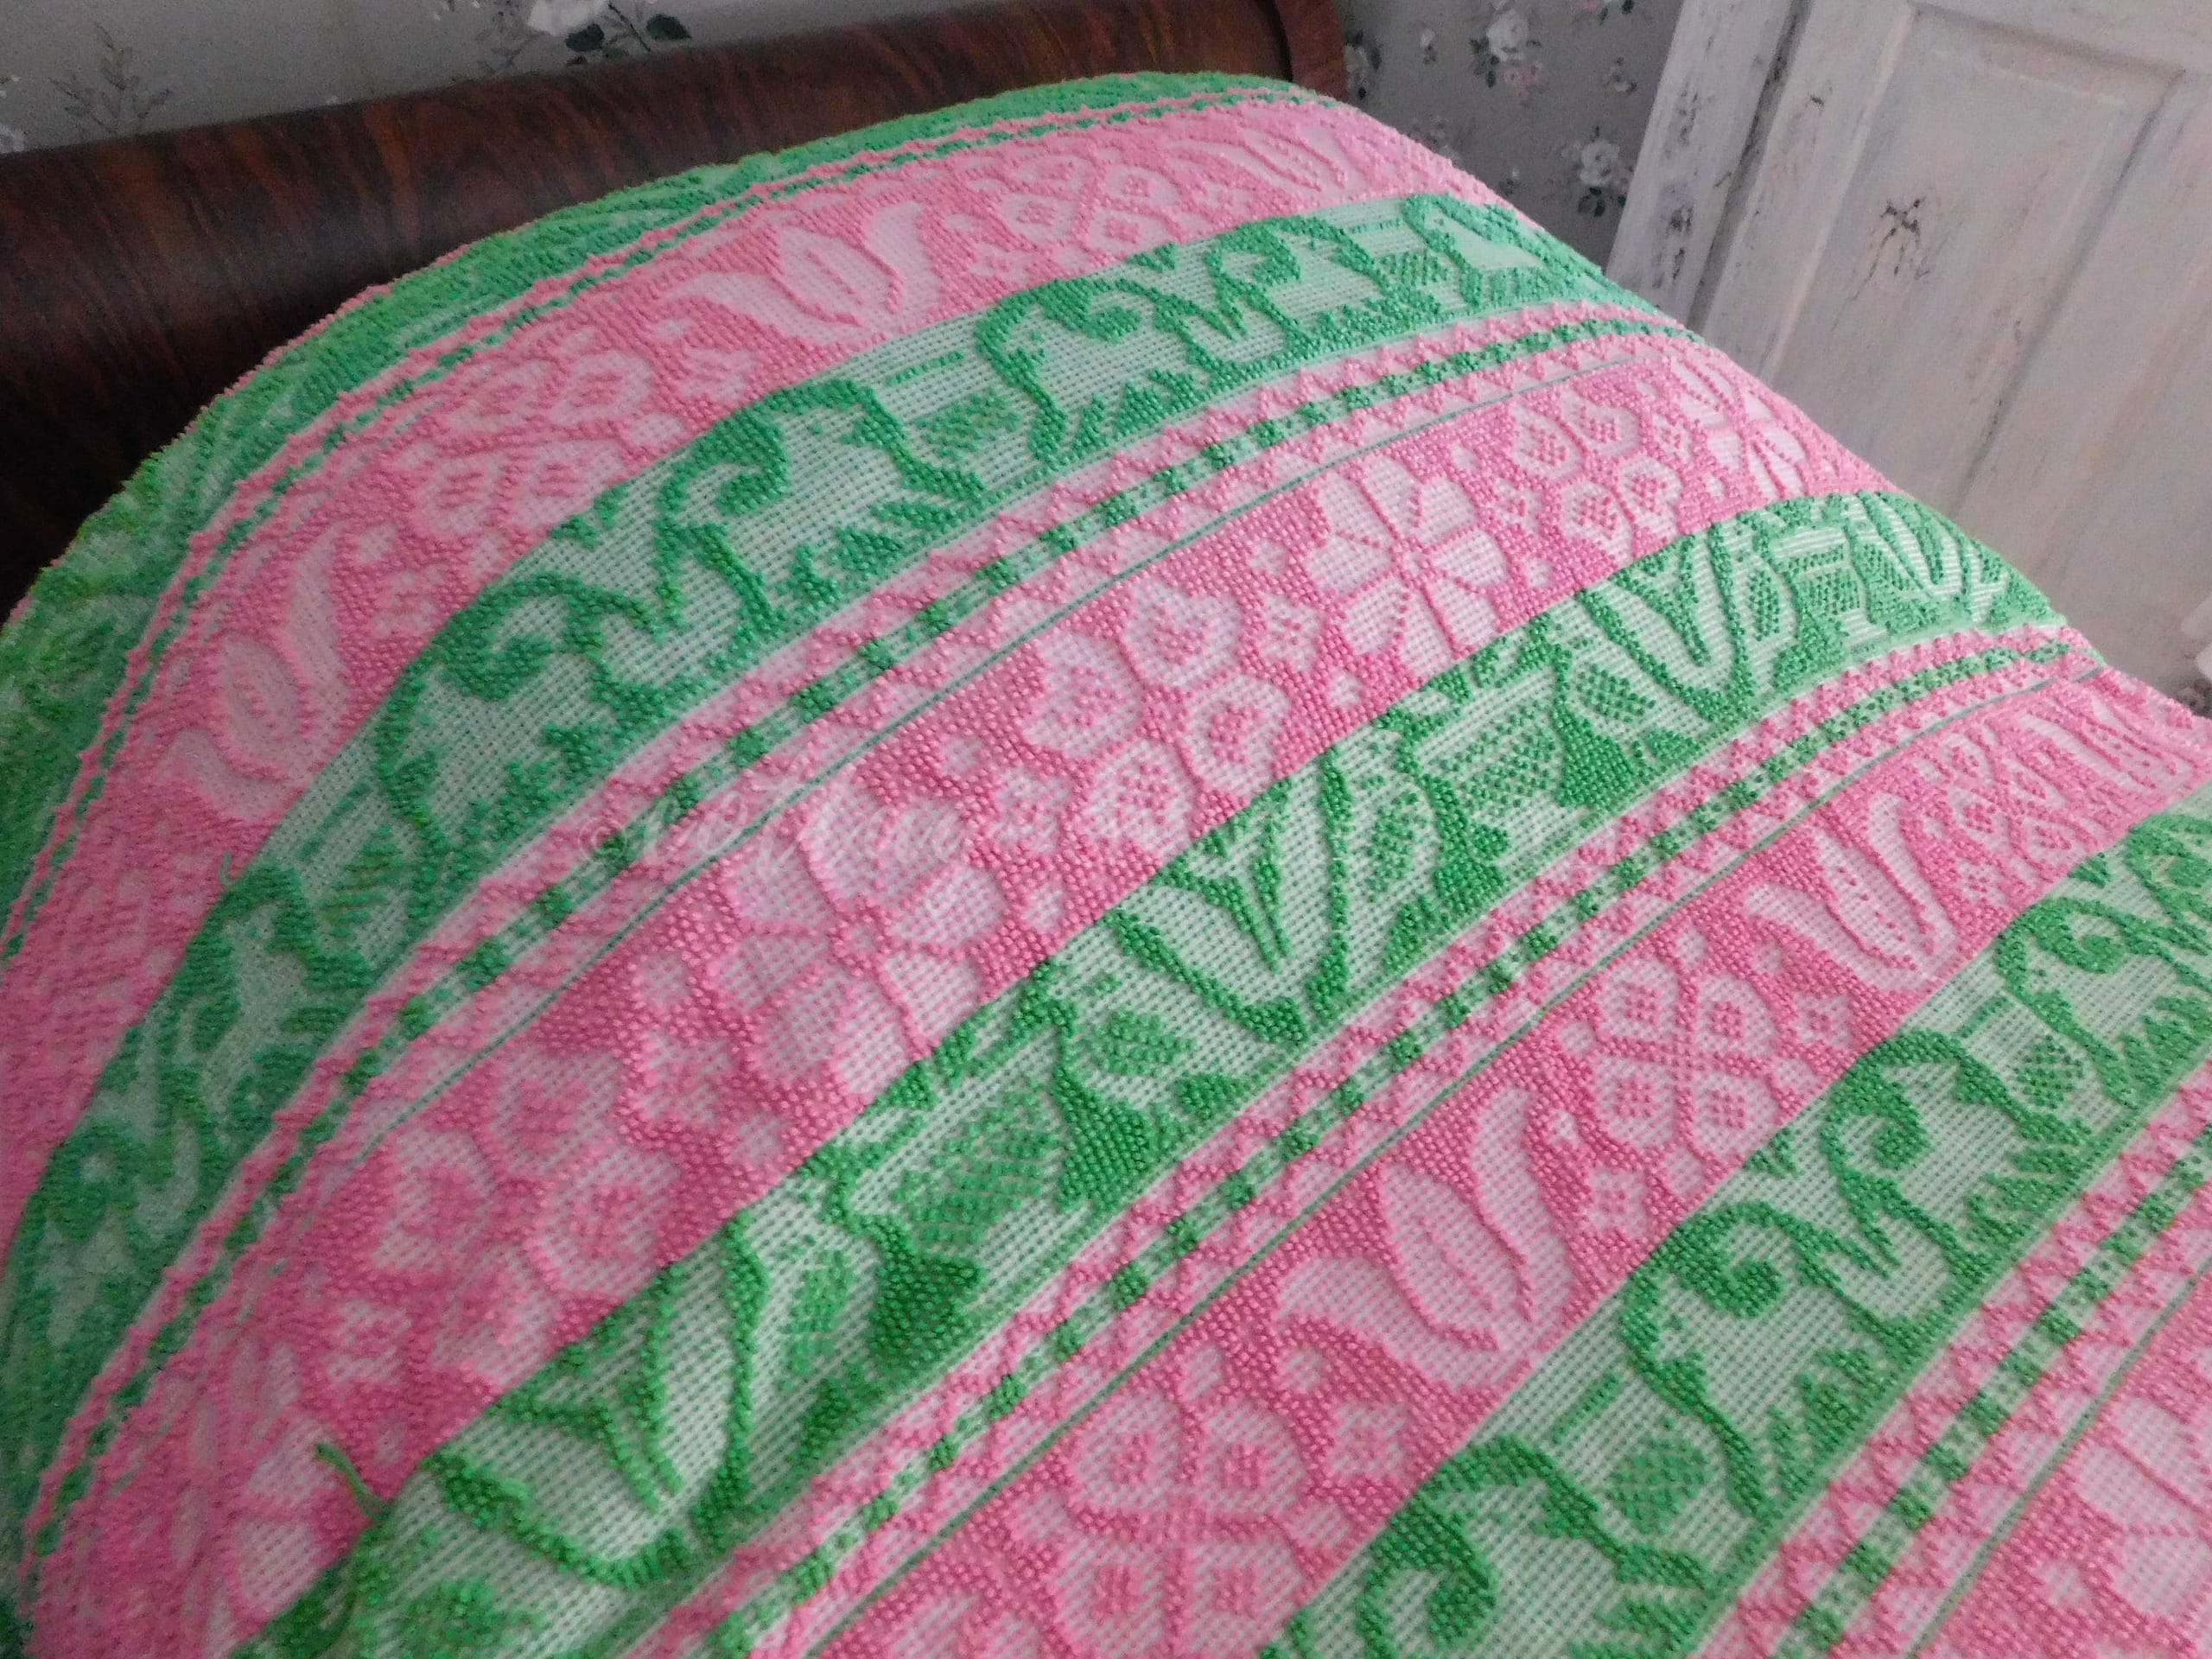 Hot Pink & Soft Cream Folk Art Pattern Throw Pillow